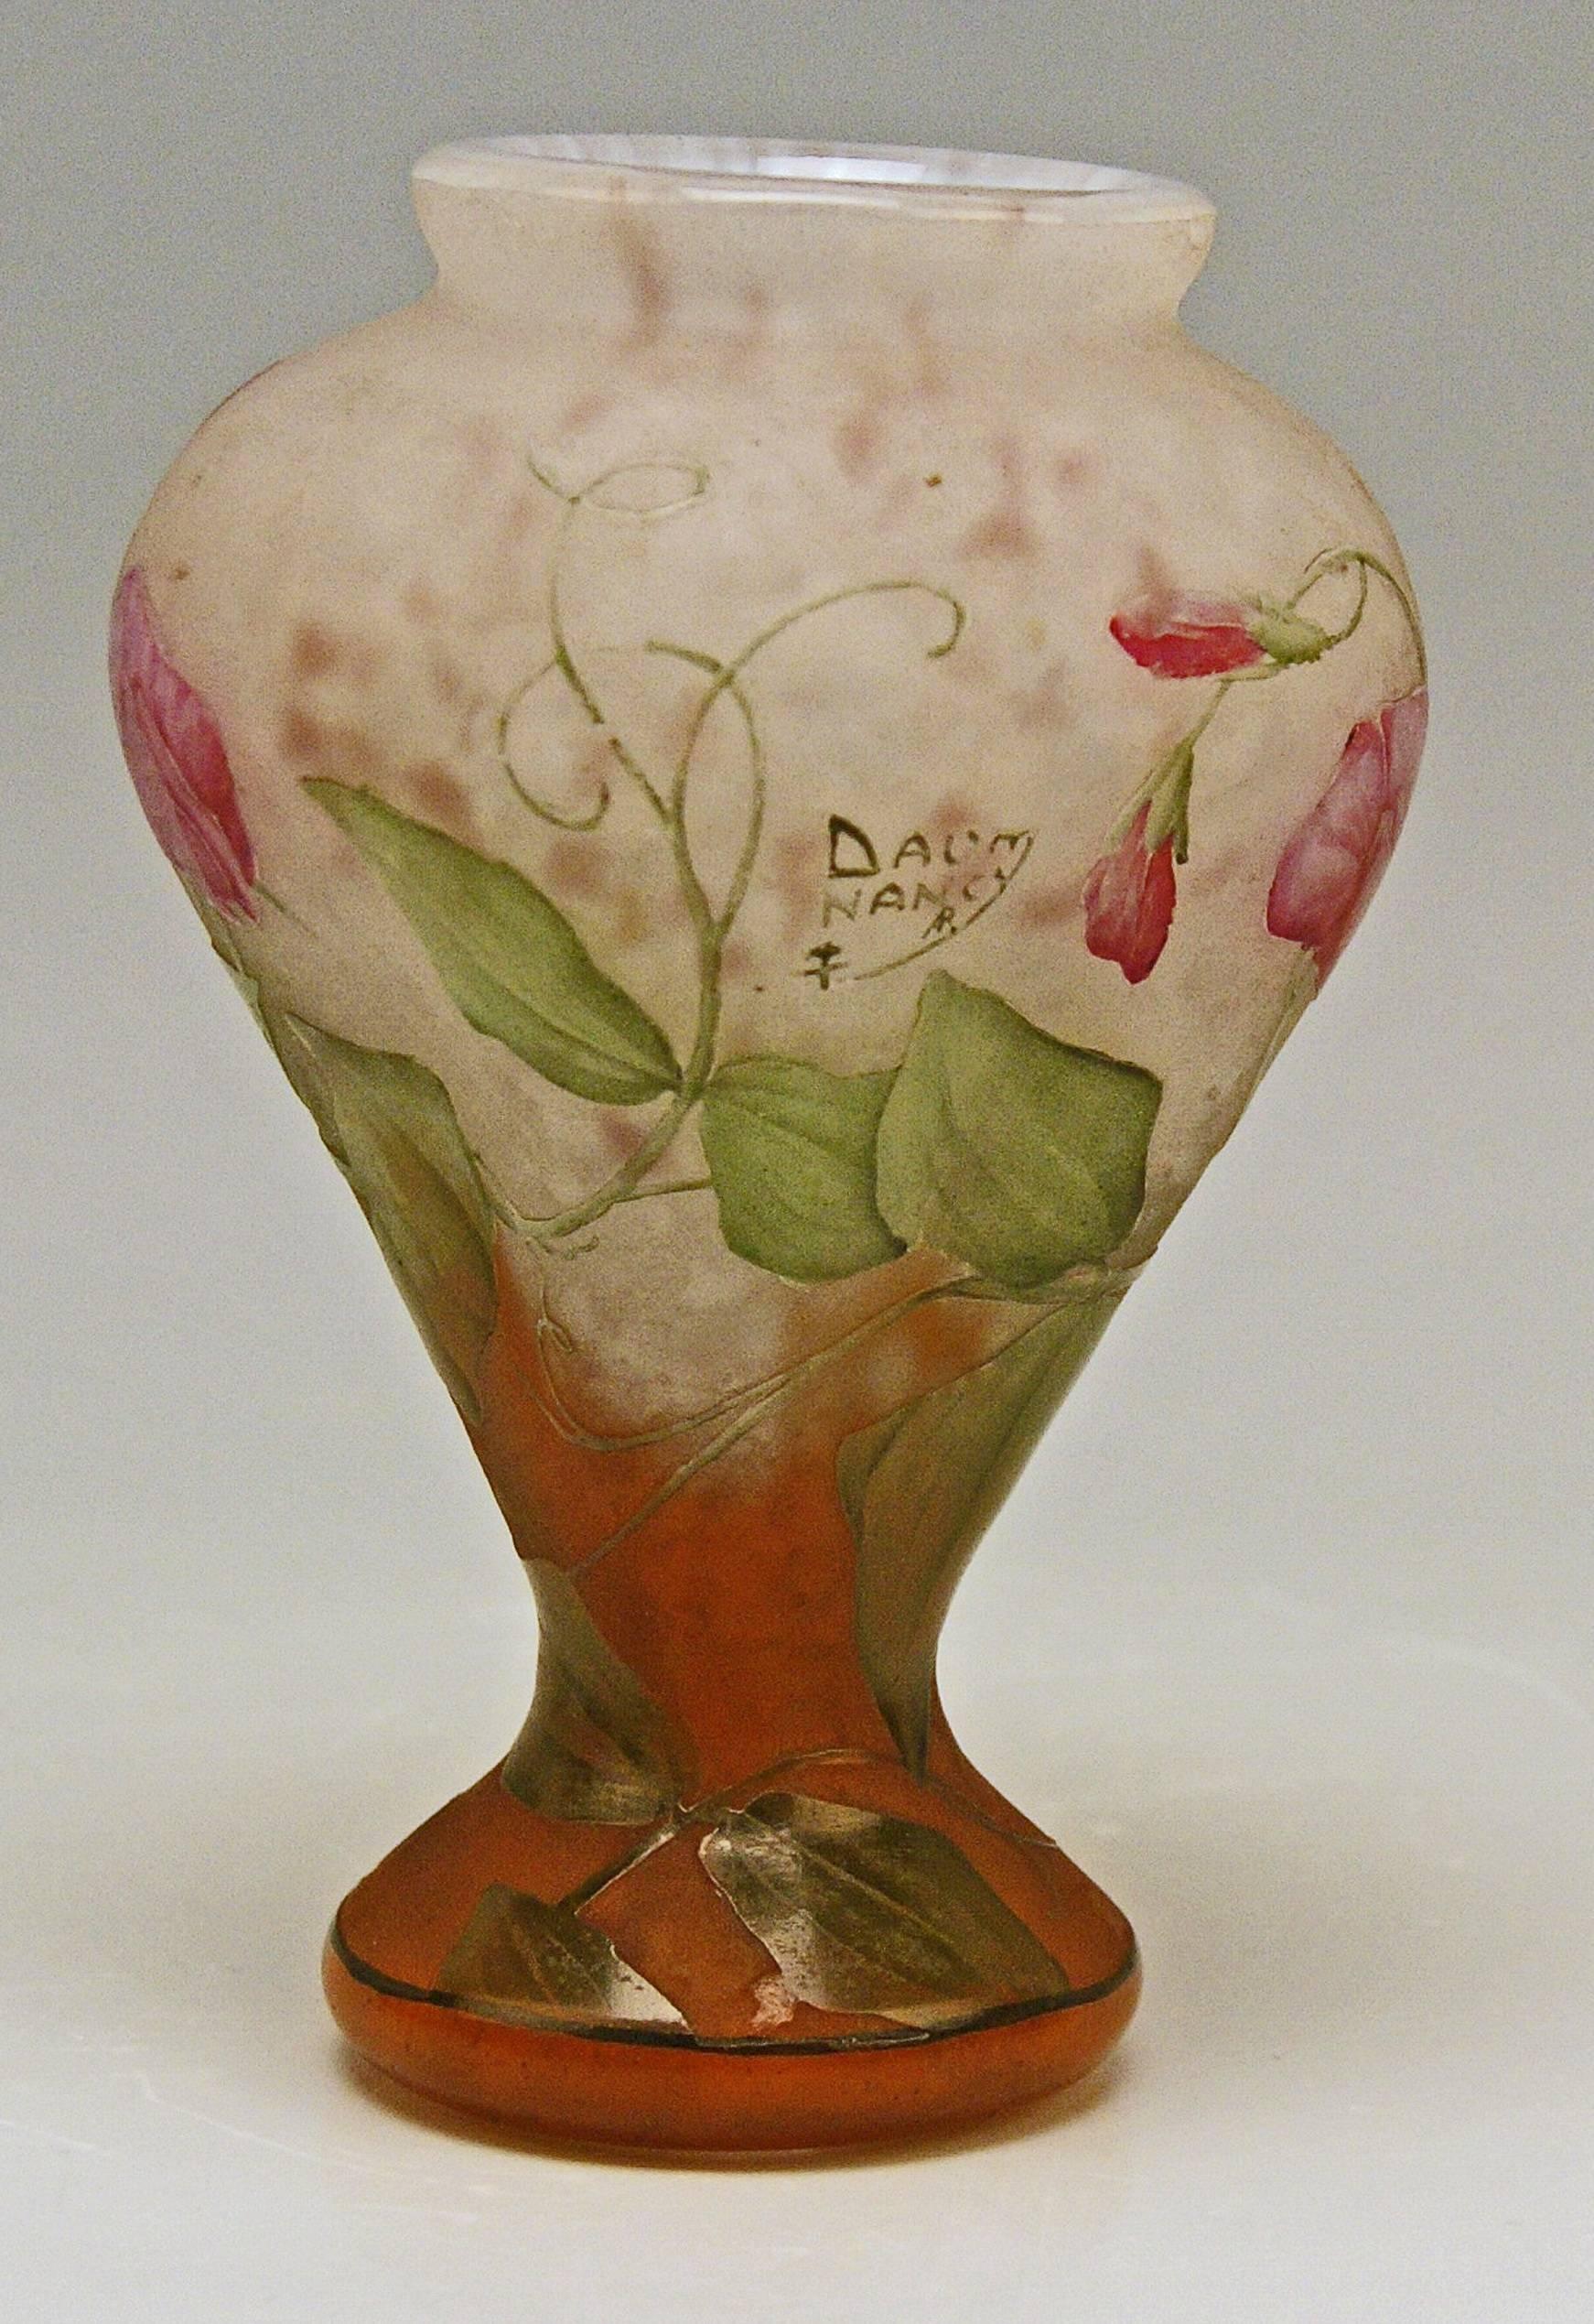 Etched Daum Nancy Vase Art Nouveau Flowers Vetches France Lorraine